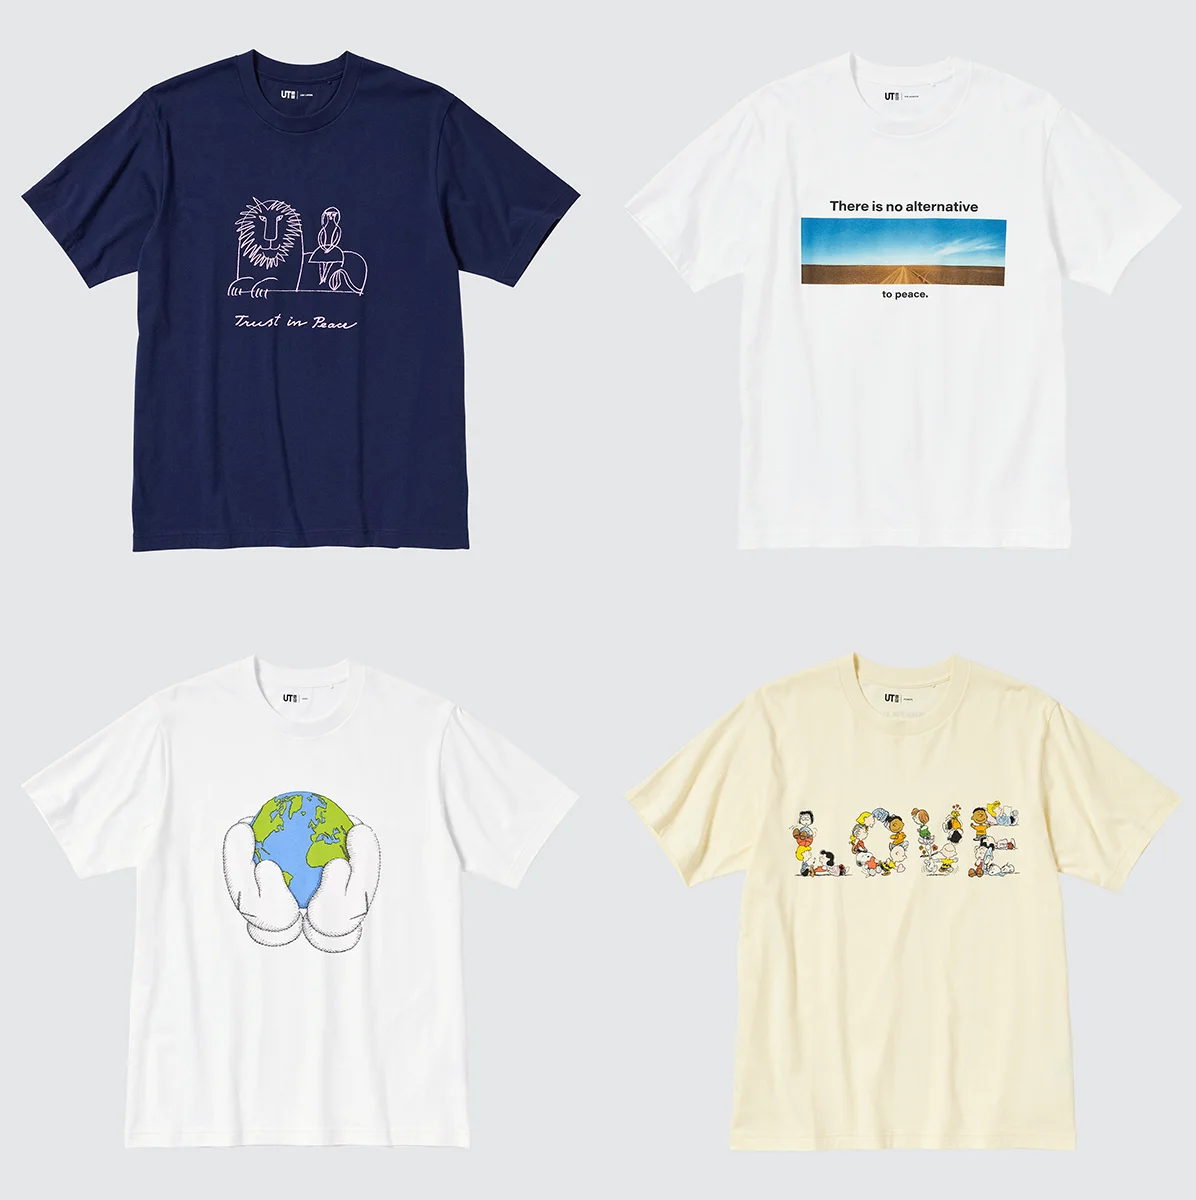 カウズやピーナッツが参加！ 【ユニクロ】のチャリティTシャツプロジェクト「PEACE FOR ALL」に新作が登場